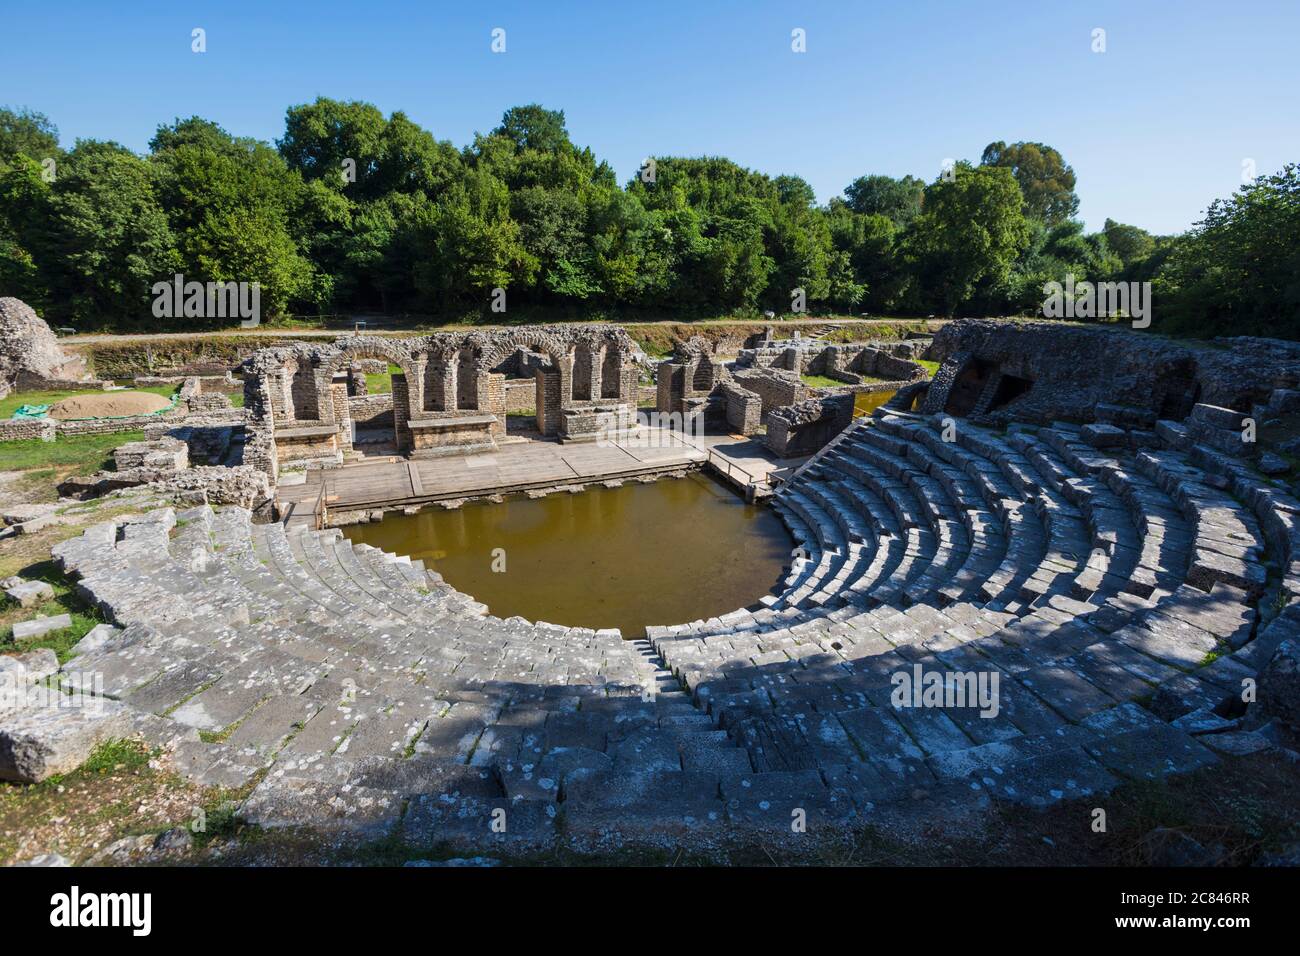 Albanien.  Butrint oder Butrint archäologische Stätte; ein UNESCO-Weltkulturerbe. Das Theater.  Ein steigenden Grundwasserspiegel hat das Orchester überschwemmt. Stockfoto